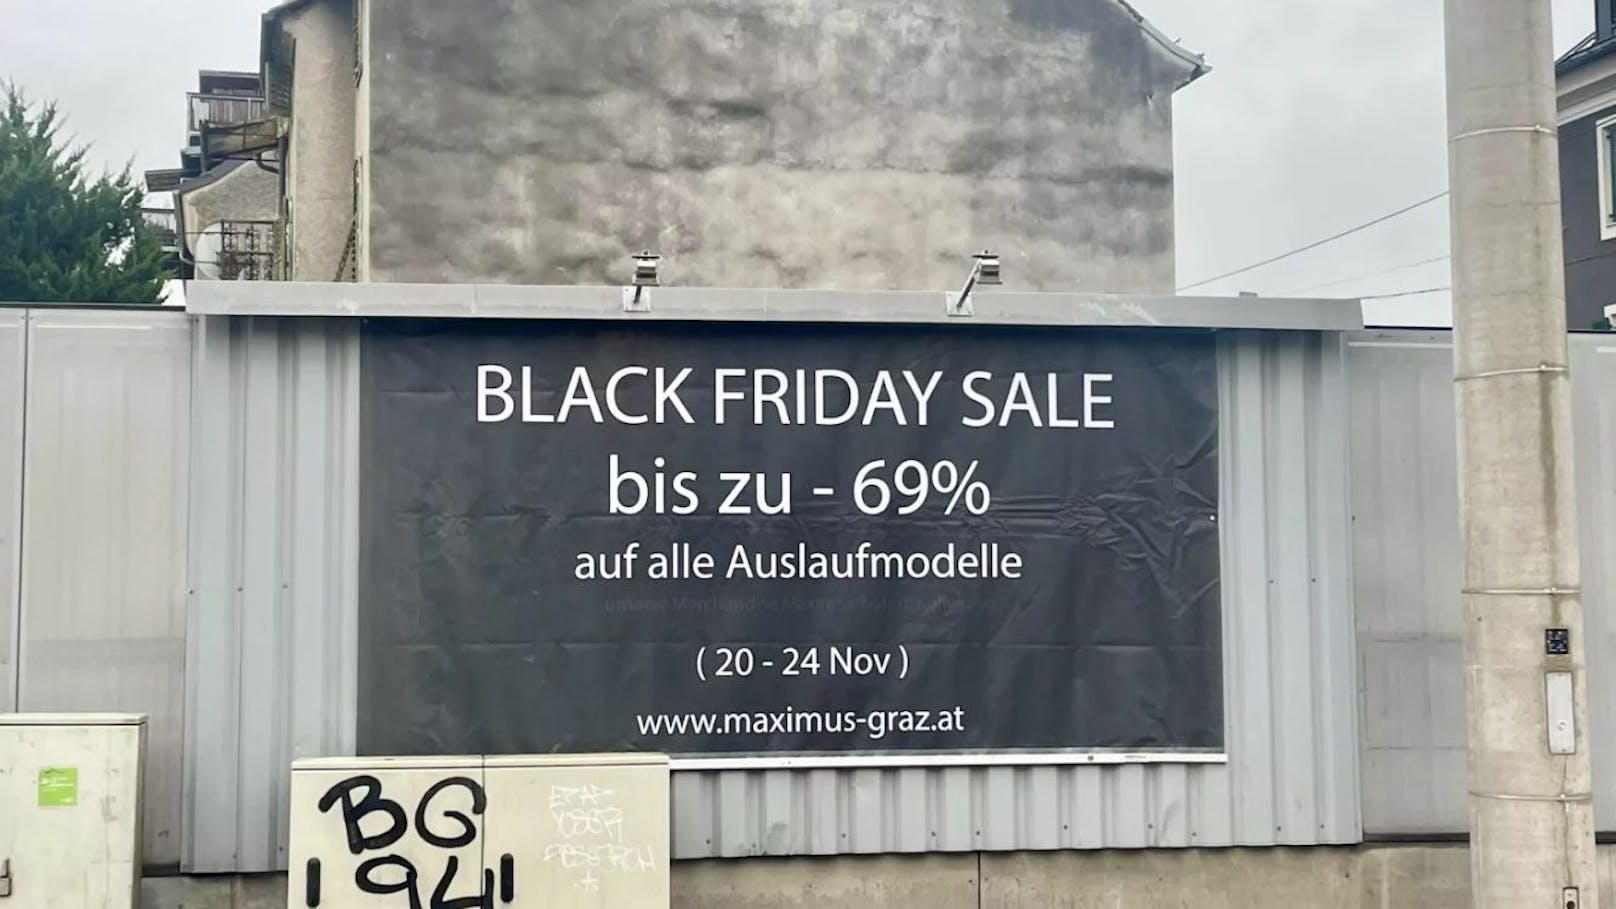 "Black Friday Sale" – erneut Wirbel um Grazer Bordell